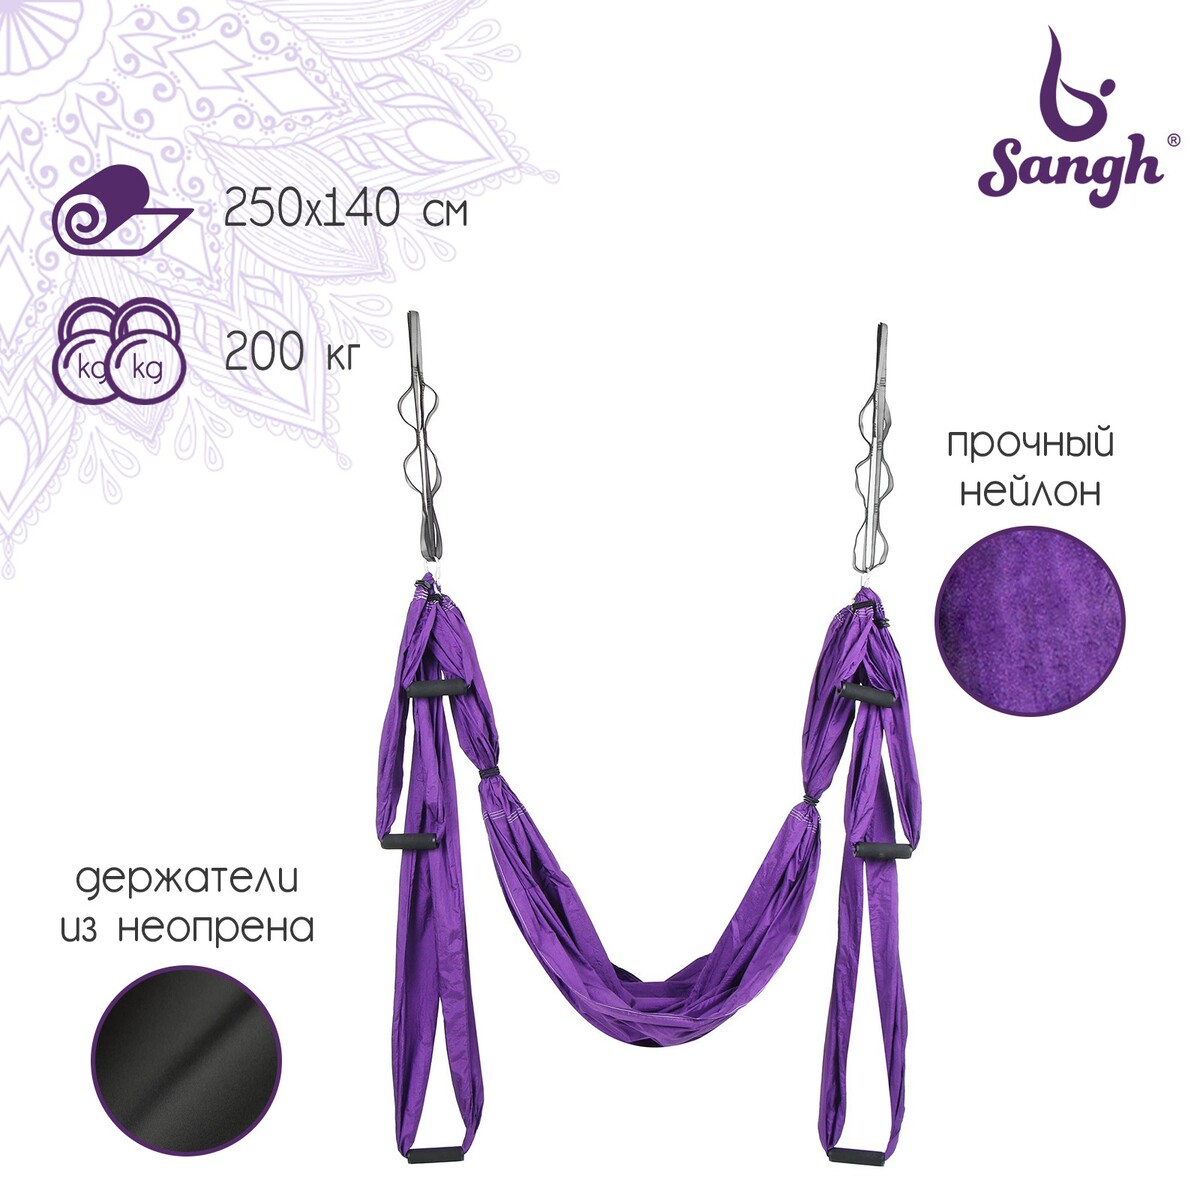 Гамак для йоги sangh, 250×140 см, цвет фиолетовый гамак подушка solmax